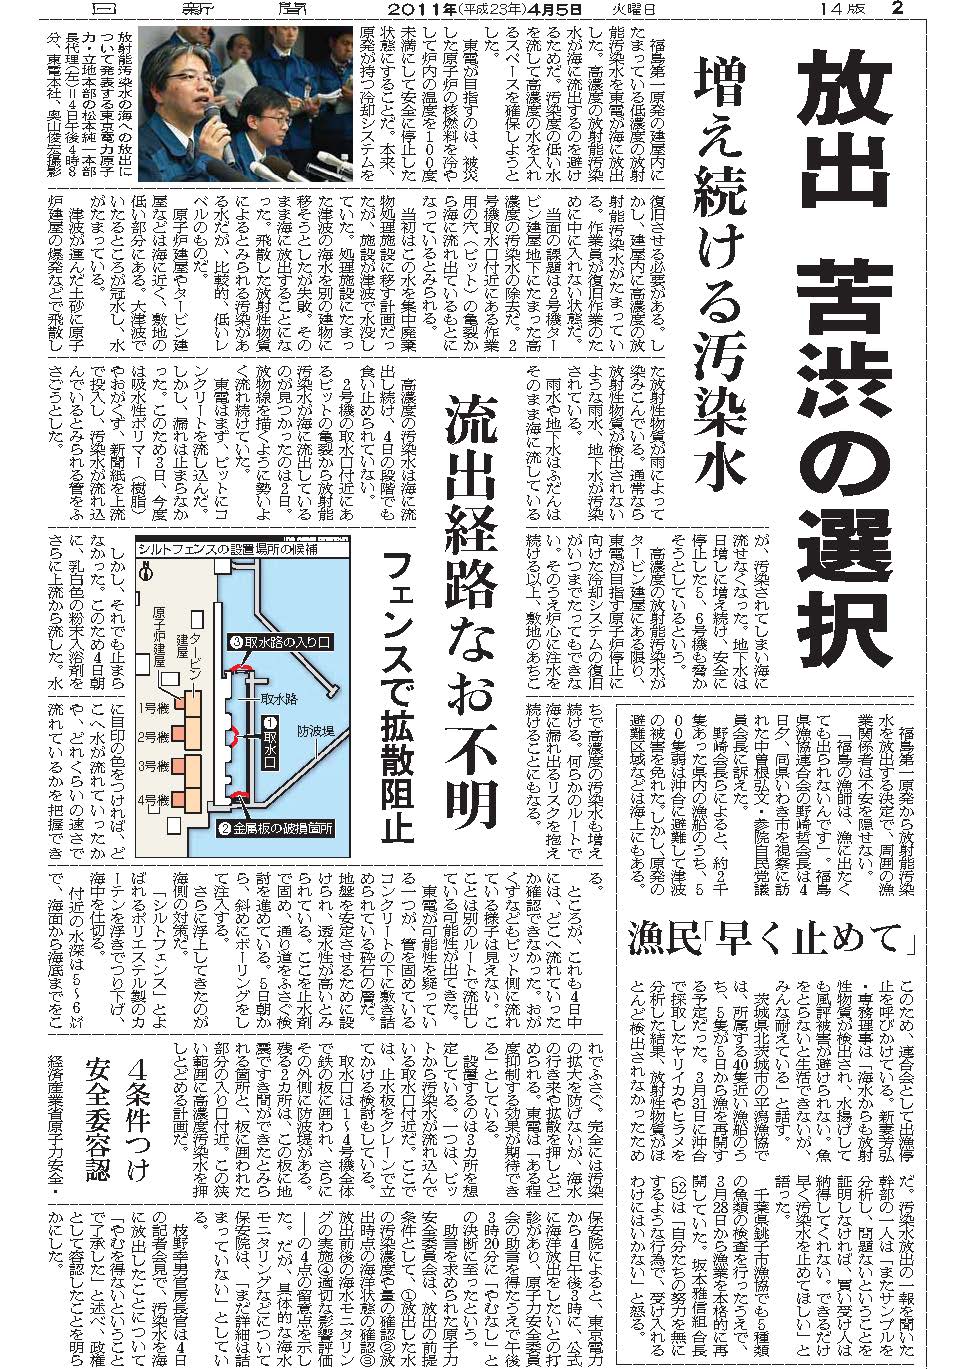 福島原発事故報道への批判への反論 記者はあのときどうするべきだったか 奥山 俊宏 論座 朝日新聞社の言論サイト